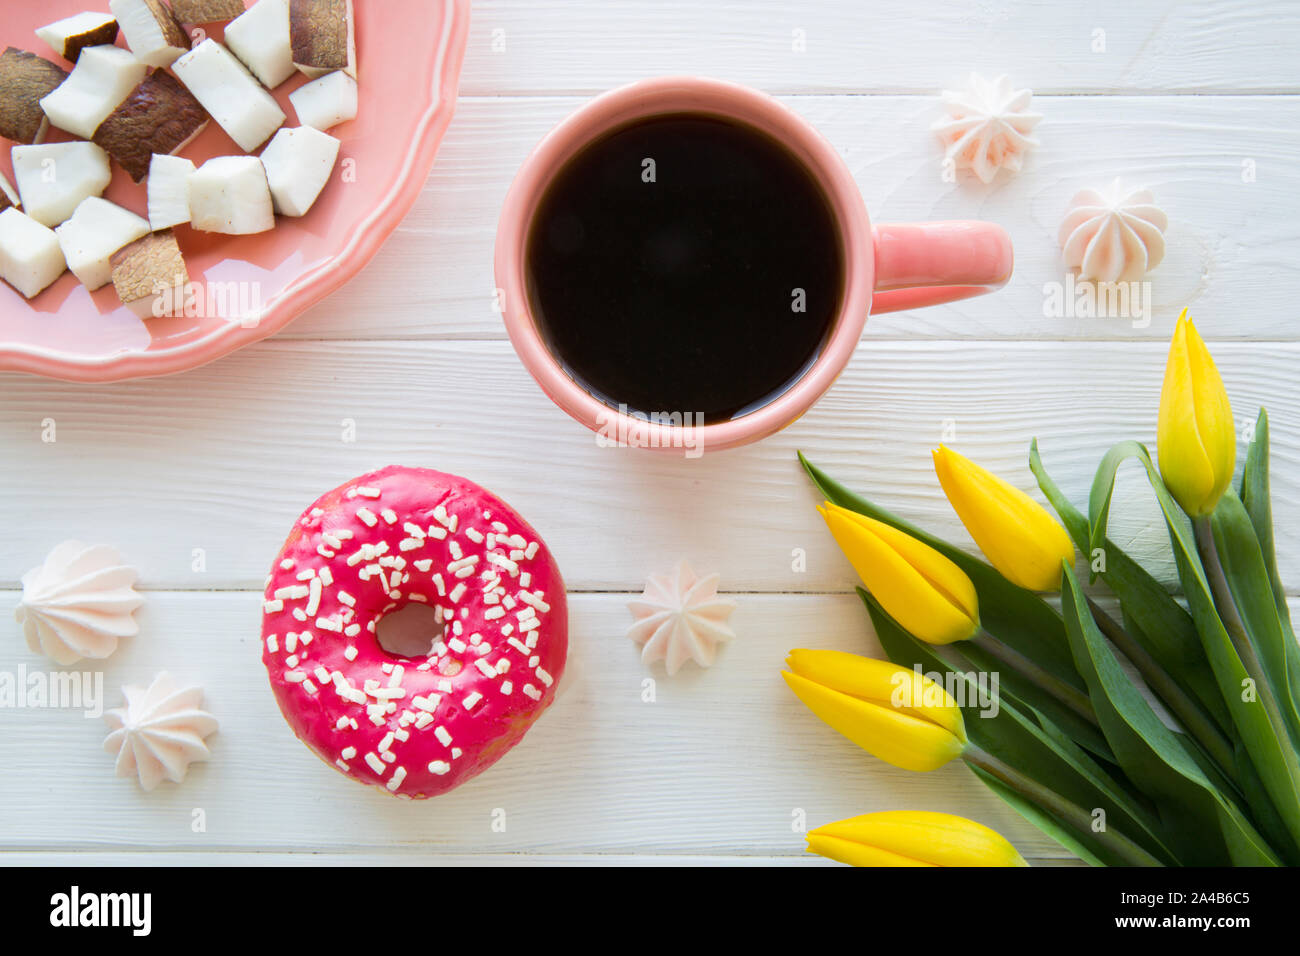 Desayuno dulce. Piezas de coco, mañana café negro y rosa donut acristalada. Tulip Yeelow decoración en madera blanca de fondo. Foto de stock